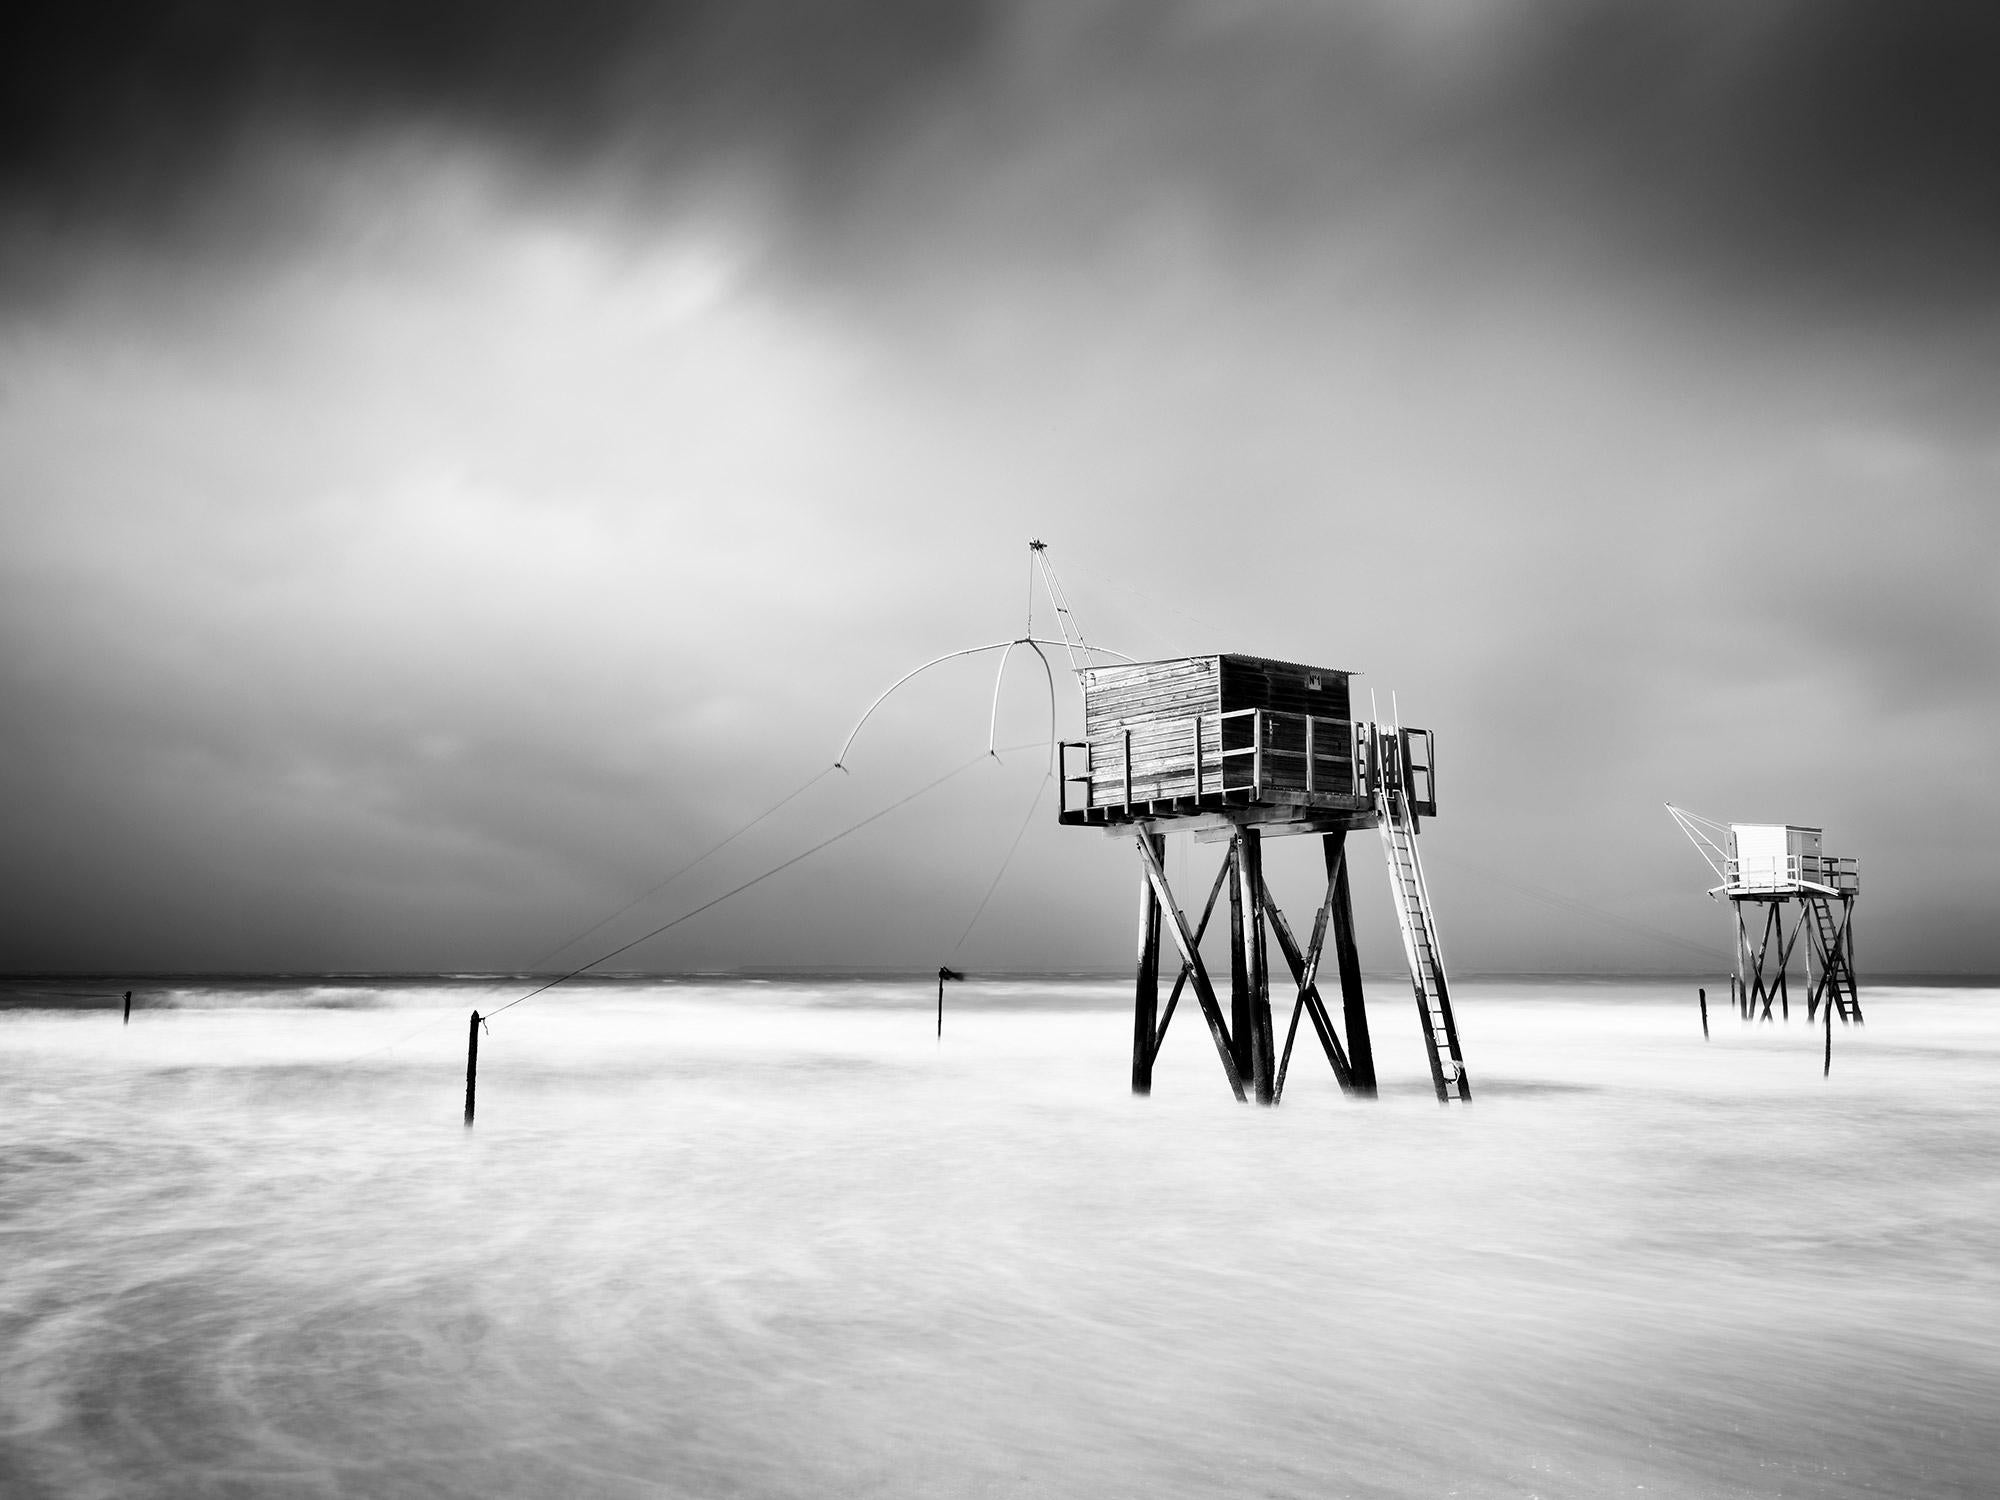 Gerald Berghammer Black and White Photograph – Fishing Hut On Stilts, Surf, Küste, Sturm, Schwarz-Weiß-Landschaftsfotografie